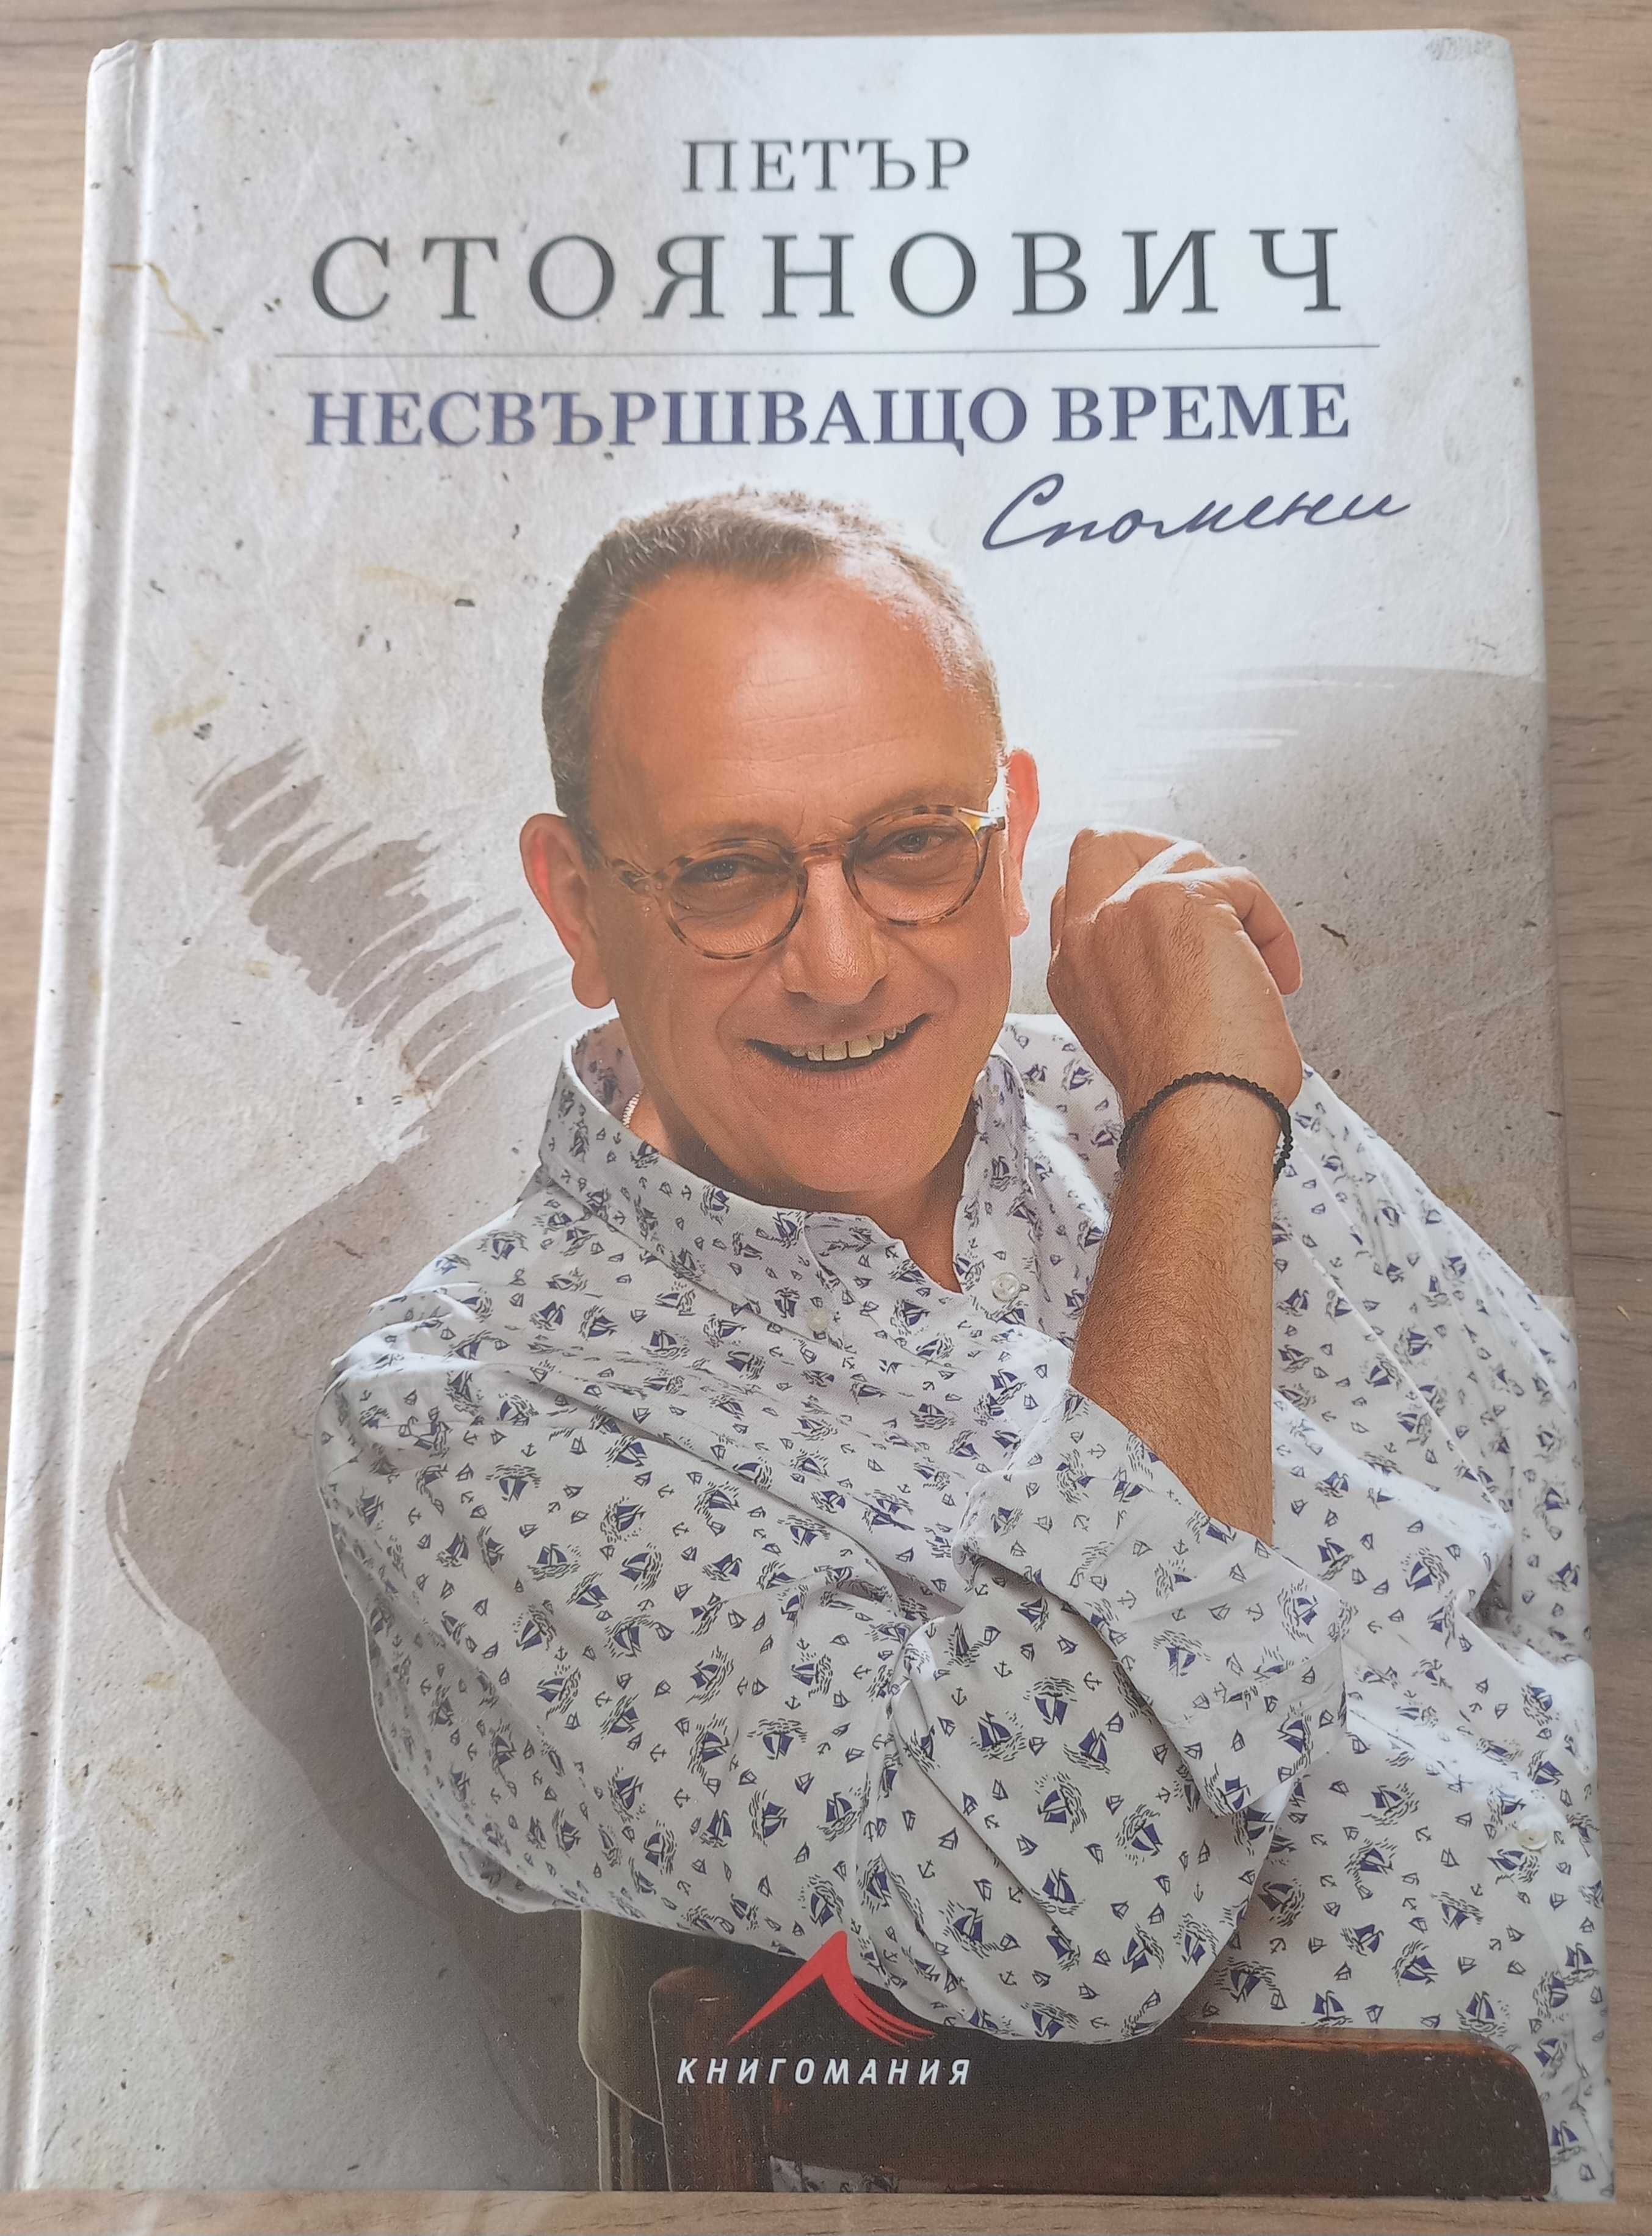 Книга - автор Петър Стоянович -  " Несвършващо време - спомени "